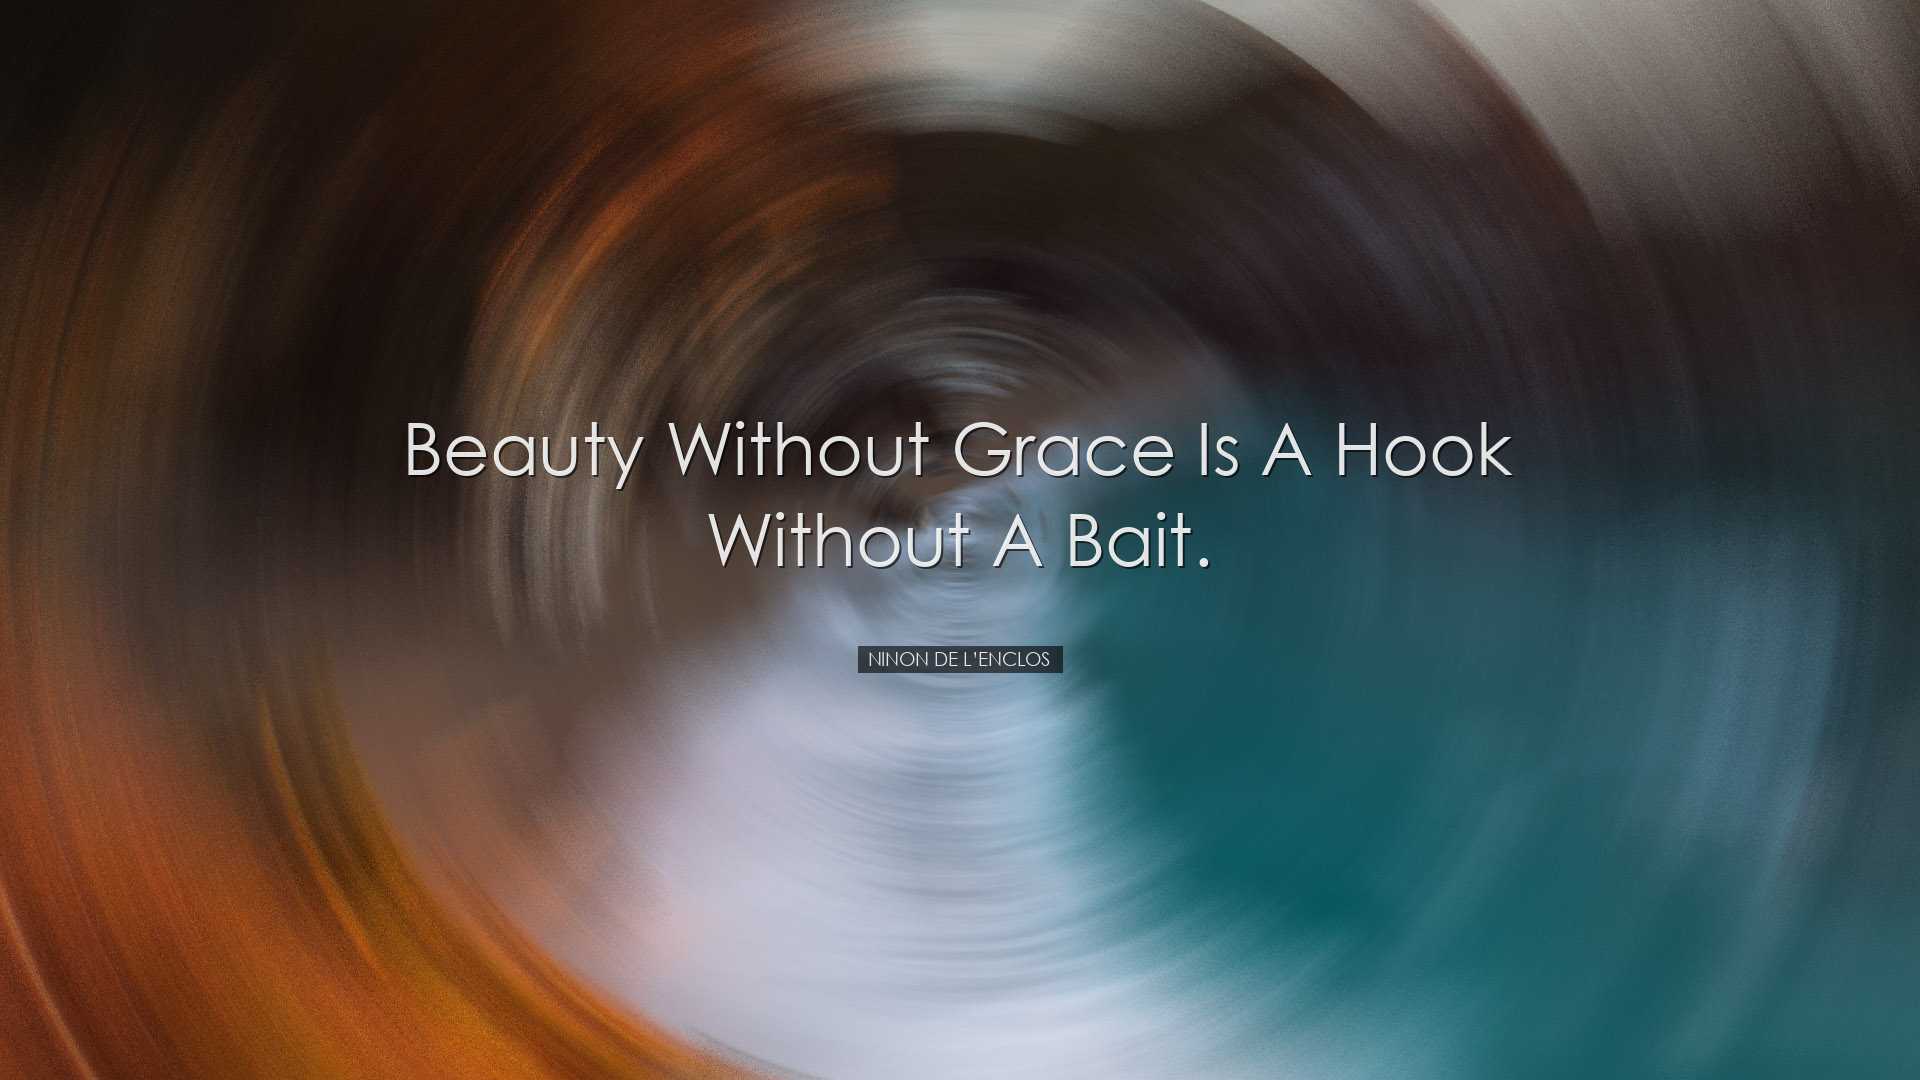 Beauty without grace is a hook without a bait. - Ninon de l’